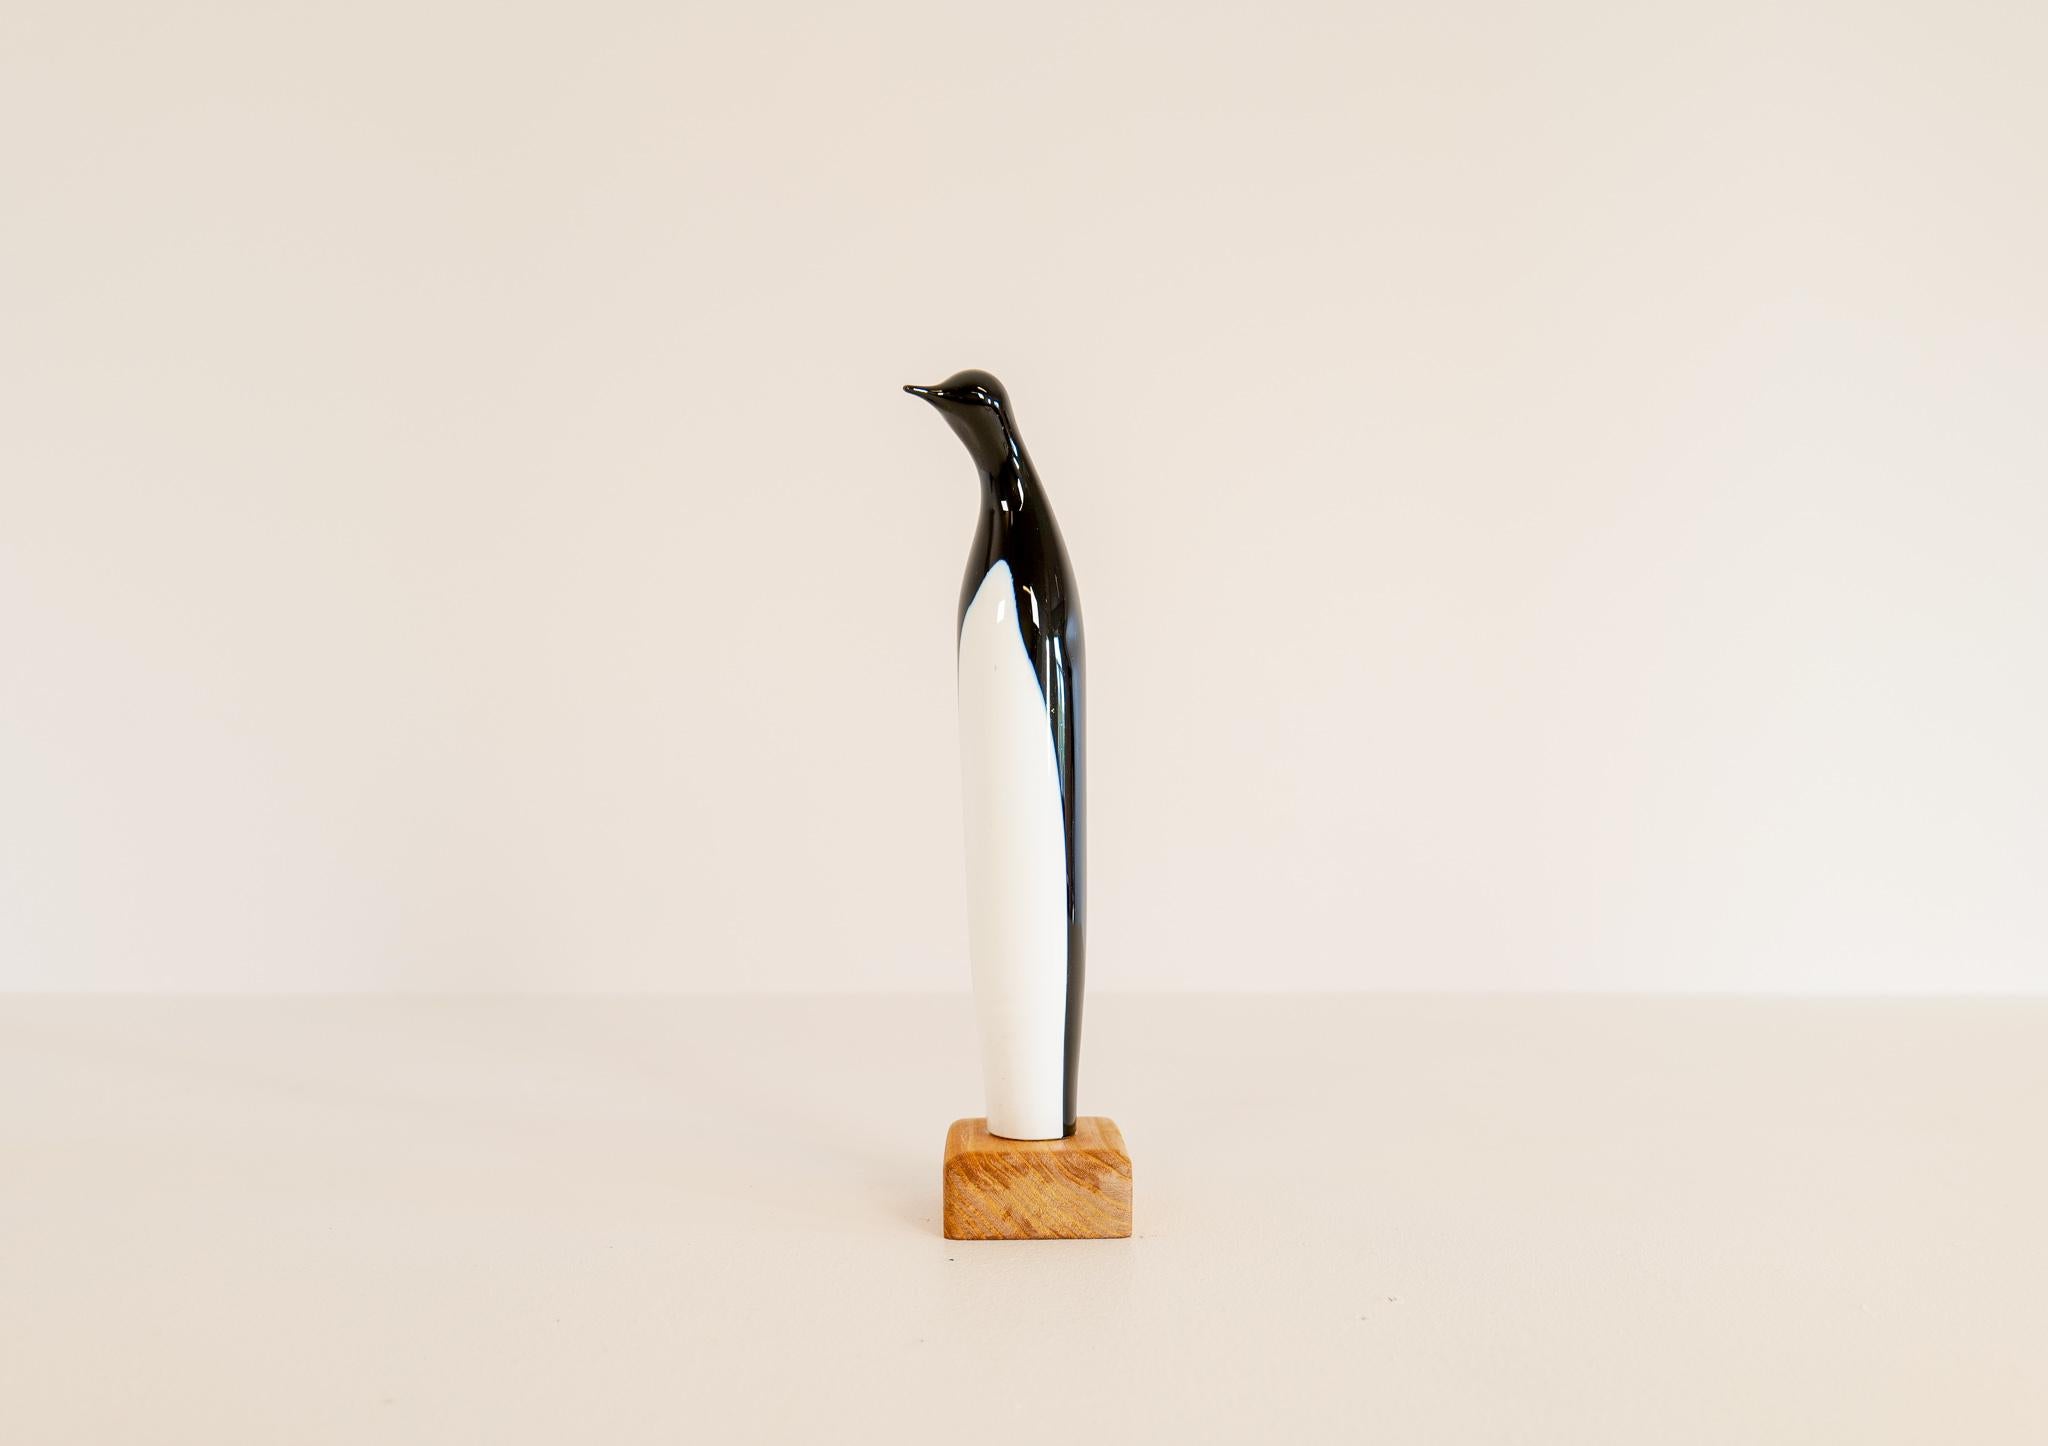 Dieses Glaskunstwerk, der Pinguin, wurde in Schweden in der Kosta-Fabrik hergestellt. Entworfen von Vicke Lindstrand.
Der Pinguin ist aus Glas gefertigt und auf einem Holzsockel montiert. Die Linie des Pinguins ist genial und passt perfekt zu dem